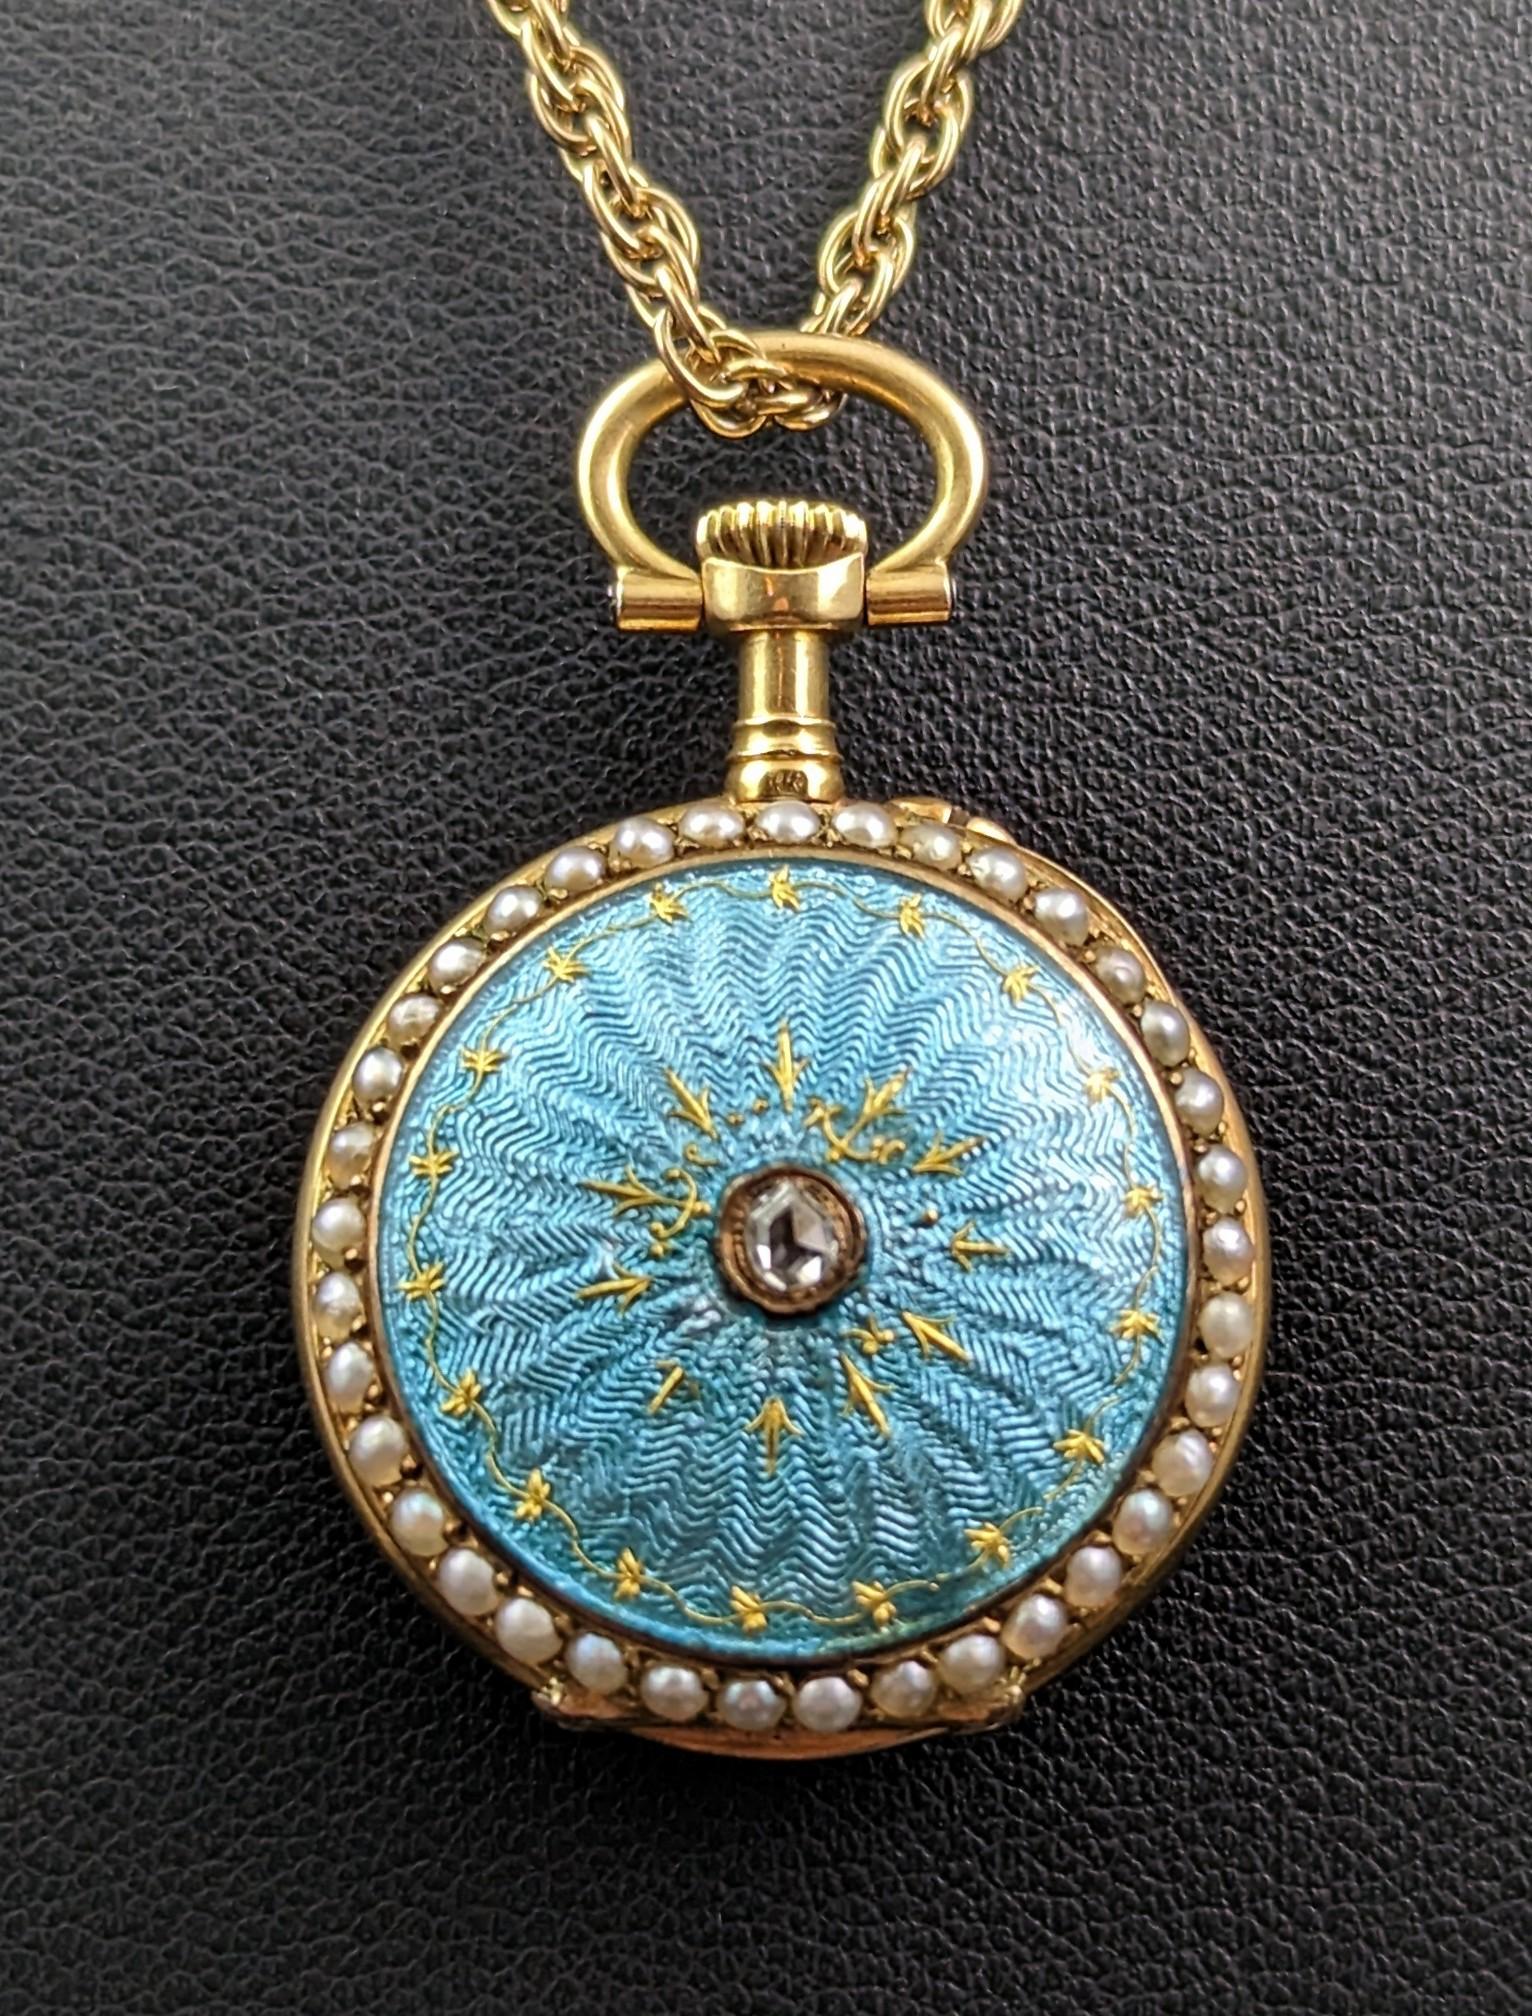 Diese wirklich spektakuläre antike Uhr aus der Jugendstilzeit aus 18-karätigem Gold mit einem Diamanten im Rosenschliff und einer Perle als Anhänger wird Sie in ihren Bann ziehen.

Gehäuse und Schleife aus 18-karätigem Gelbgold mit cremeweißem